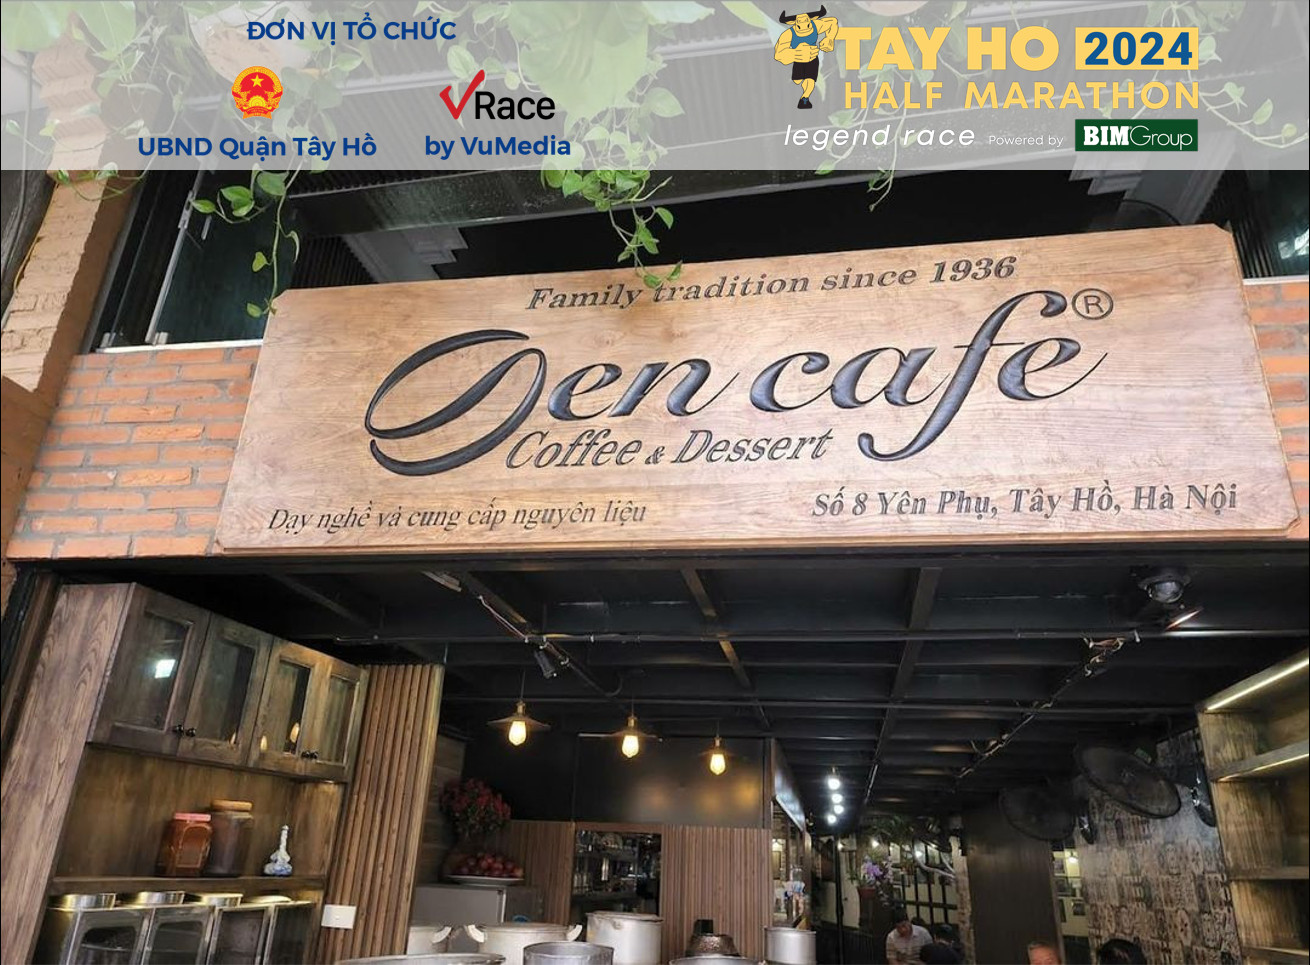 Sen Cafe –  Nhà tài trợ Đồng của giải Tay Ho Half Marathon 2024 Powered by BIMGROUP